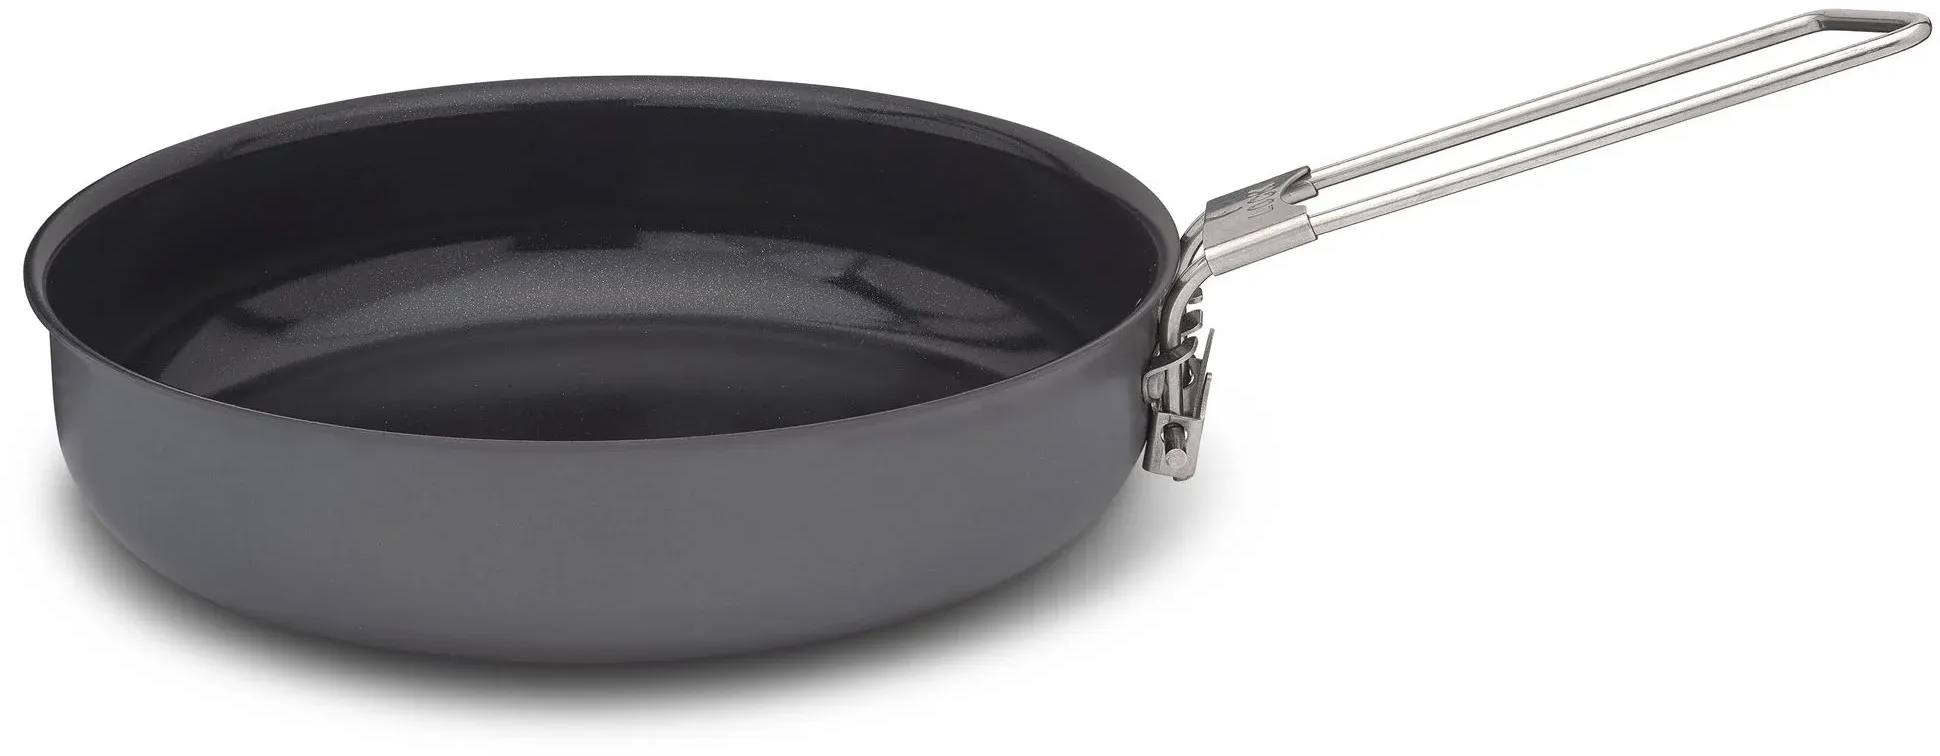 Litech Frying Pan